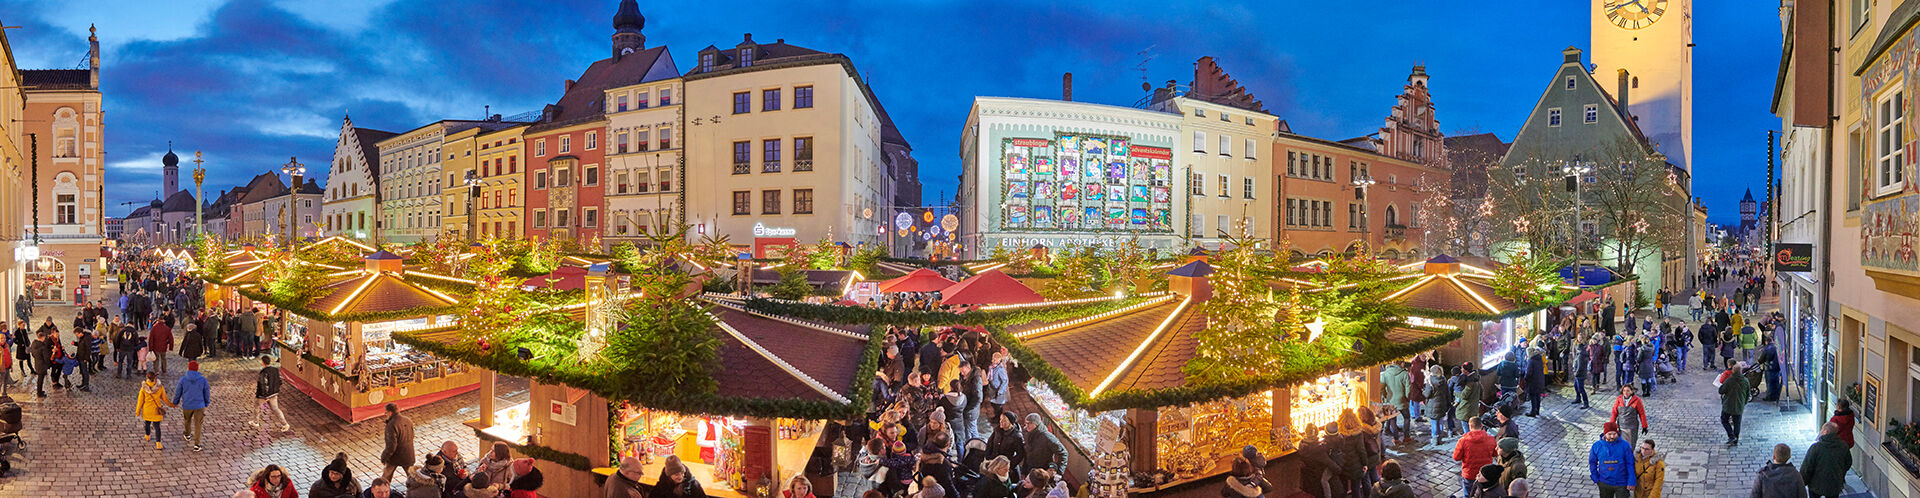 Panoramaaufnahme des Straubinger Christkindlmarkts